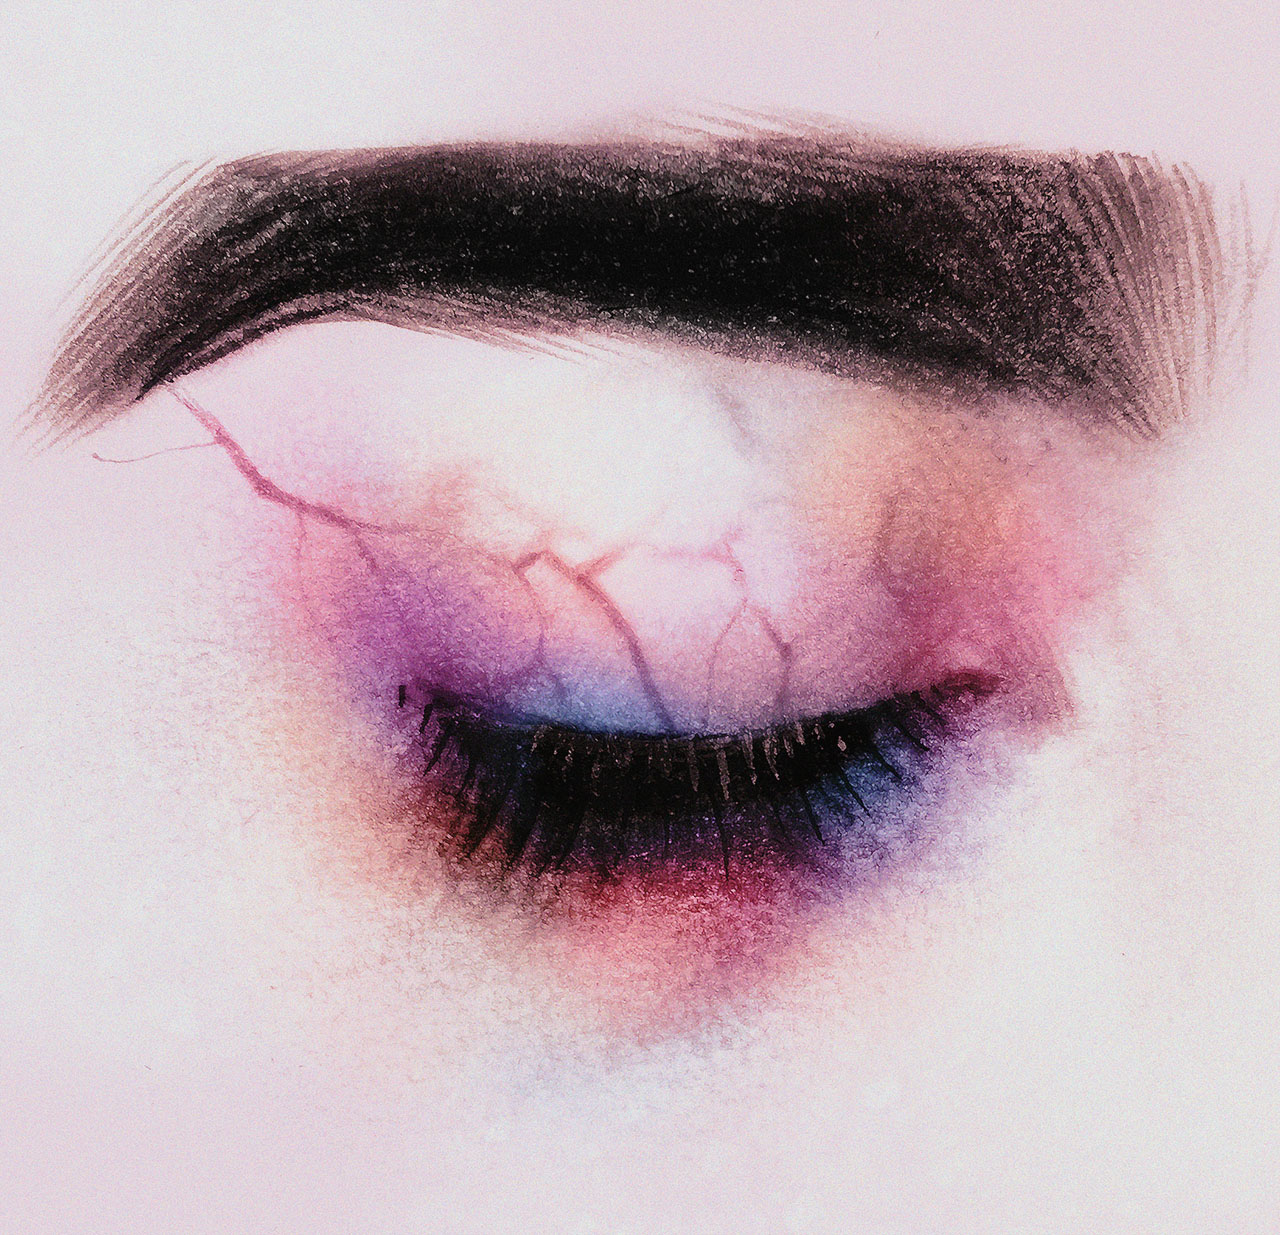 Drawing of closed eye with veins Illustration av stängt öga med ådror på